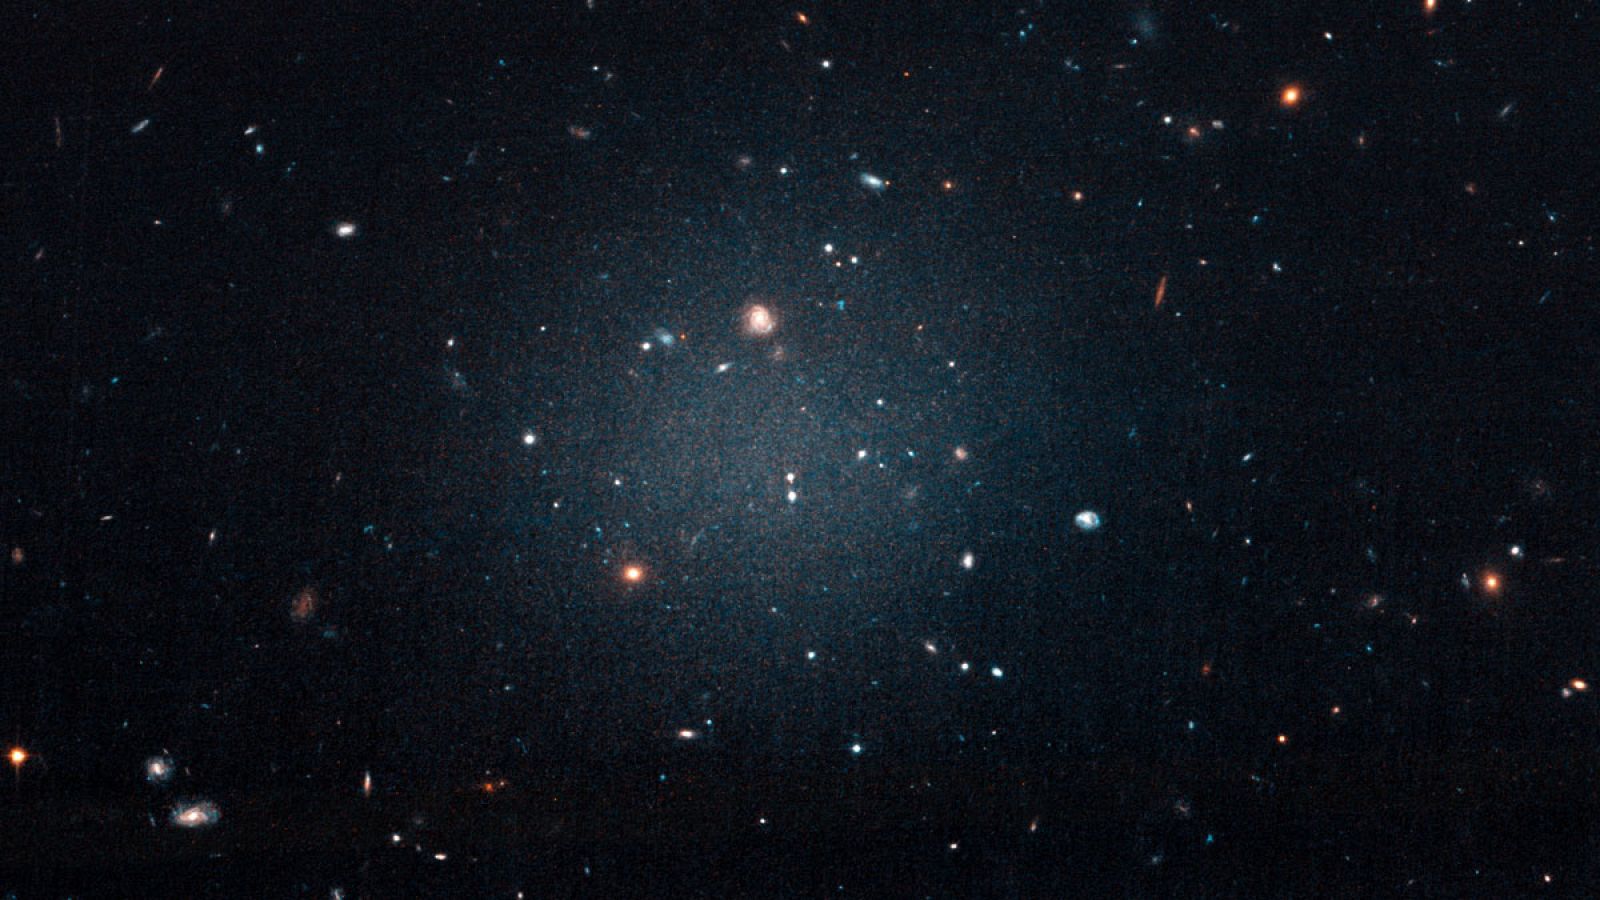 Fotografía de la galaxia NGC1052-DF2 tomada por el telescopio Hubble